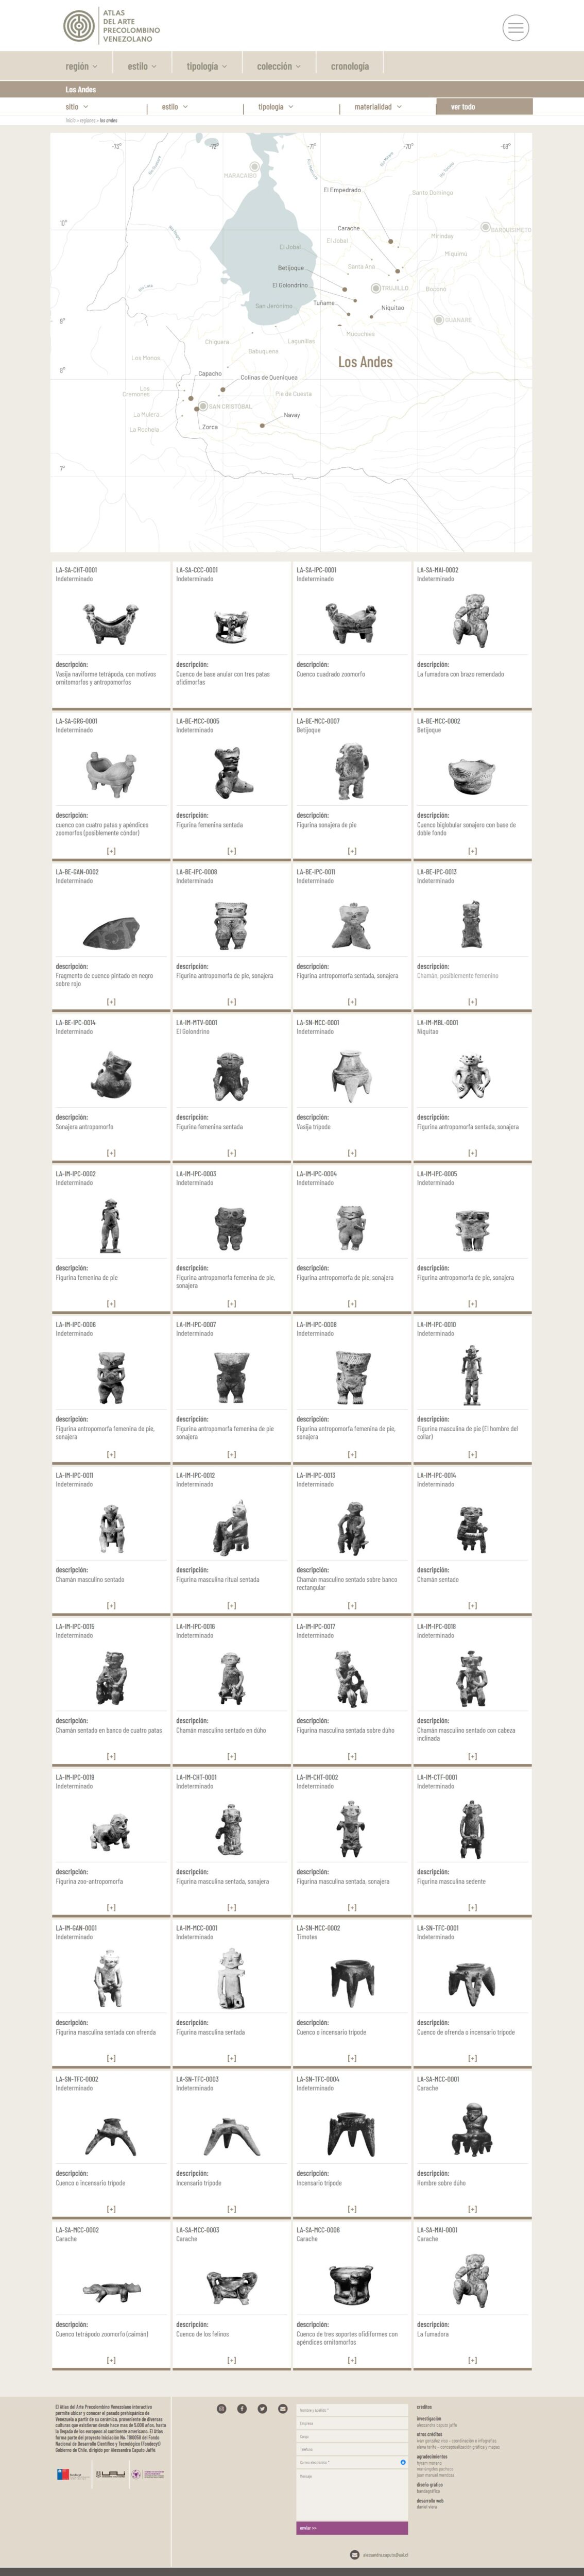 Atlas del Arte Precolombino Venezolano | El Atlas del Arte Precolombino Venezolano interactivo permite ubicar y conocer el pasado prehispánico de Venezuela a partir de su cerámica. Desarrollada para WordPress con bootstrap.